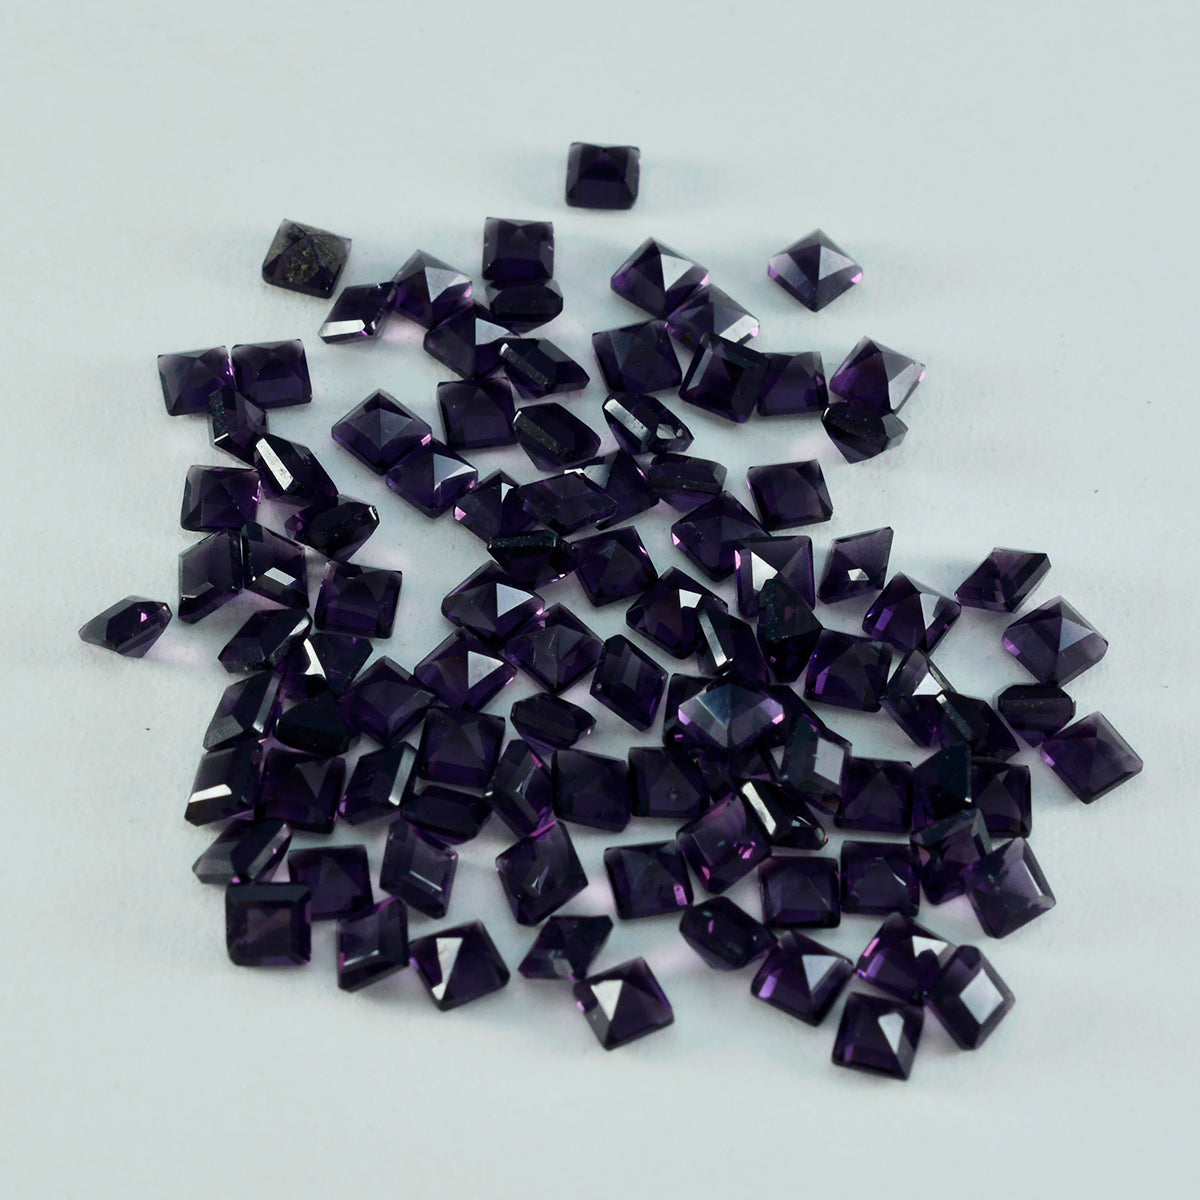 riyogems 1 шт. фиолетовый аметист cz граненый 3x3 мм квадратной формы фантастическое качество свободный камень